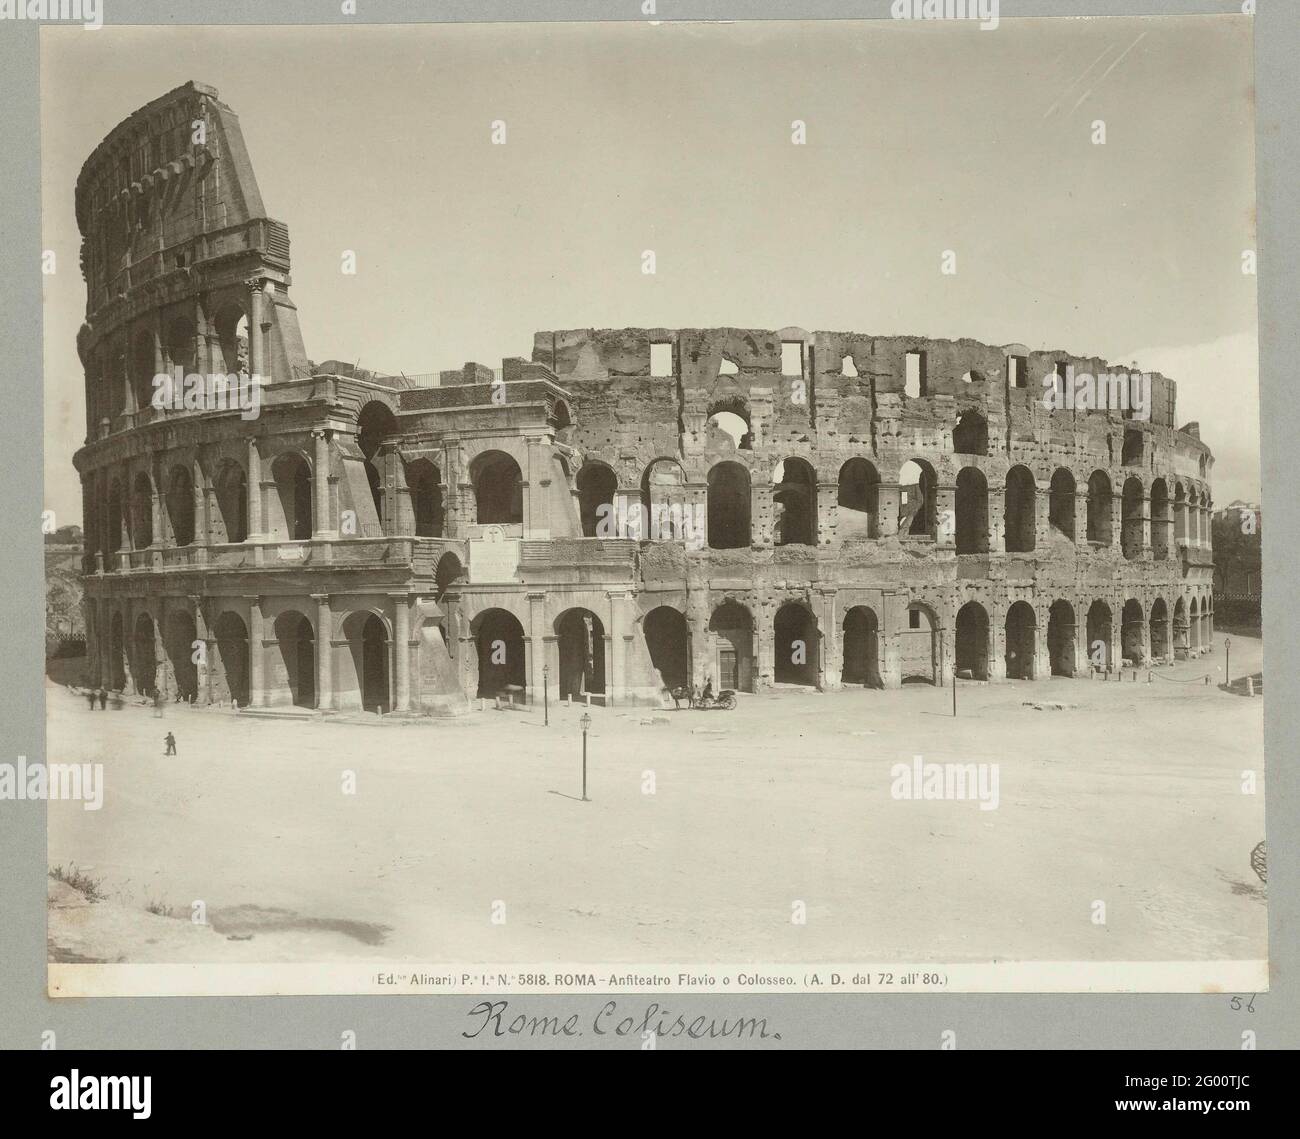 Colosseum in Rome; P.i.n. 5818 Roma Amfiteatro Flavio or Colosseum (A.D. DELL 72 to 80) ... Stock Photo